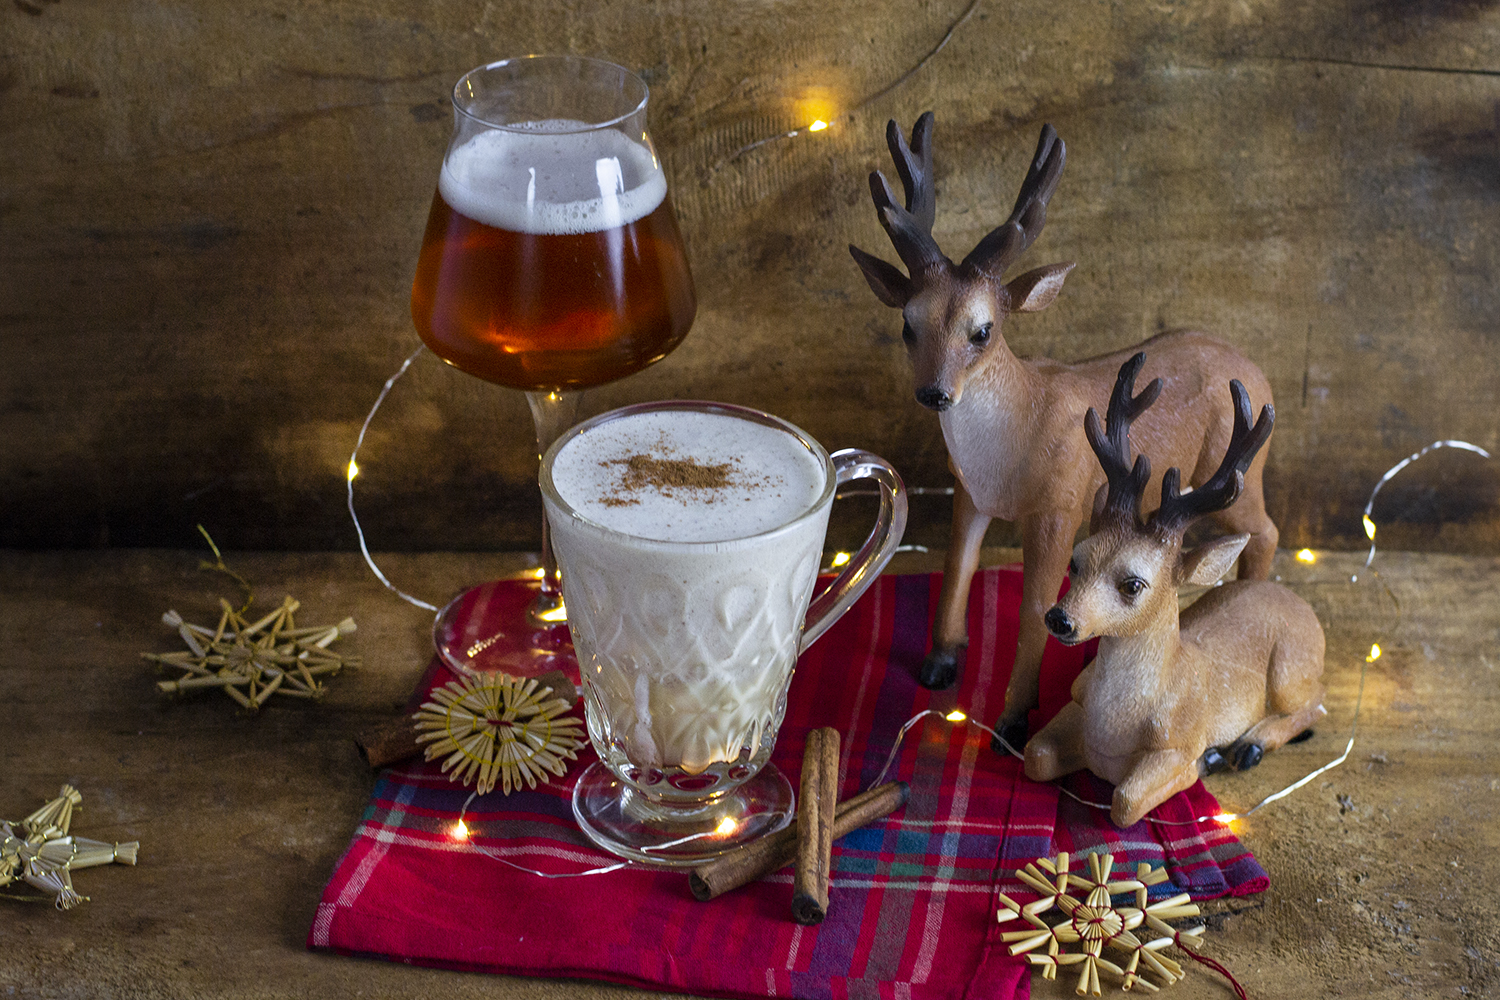 kompozycja świąteczna, kubek z egg nogiem przyozdobiony lampkami, obok renifery oraz szklanka piwa dyniowego. całość ozdobiona świątecznymi słomianymi ozdobami